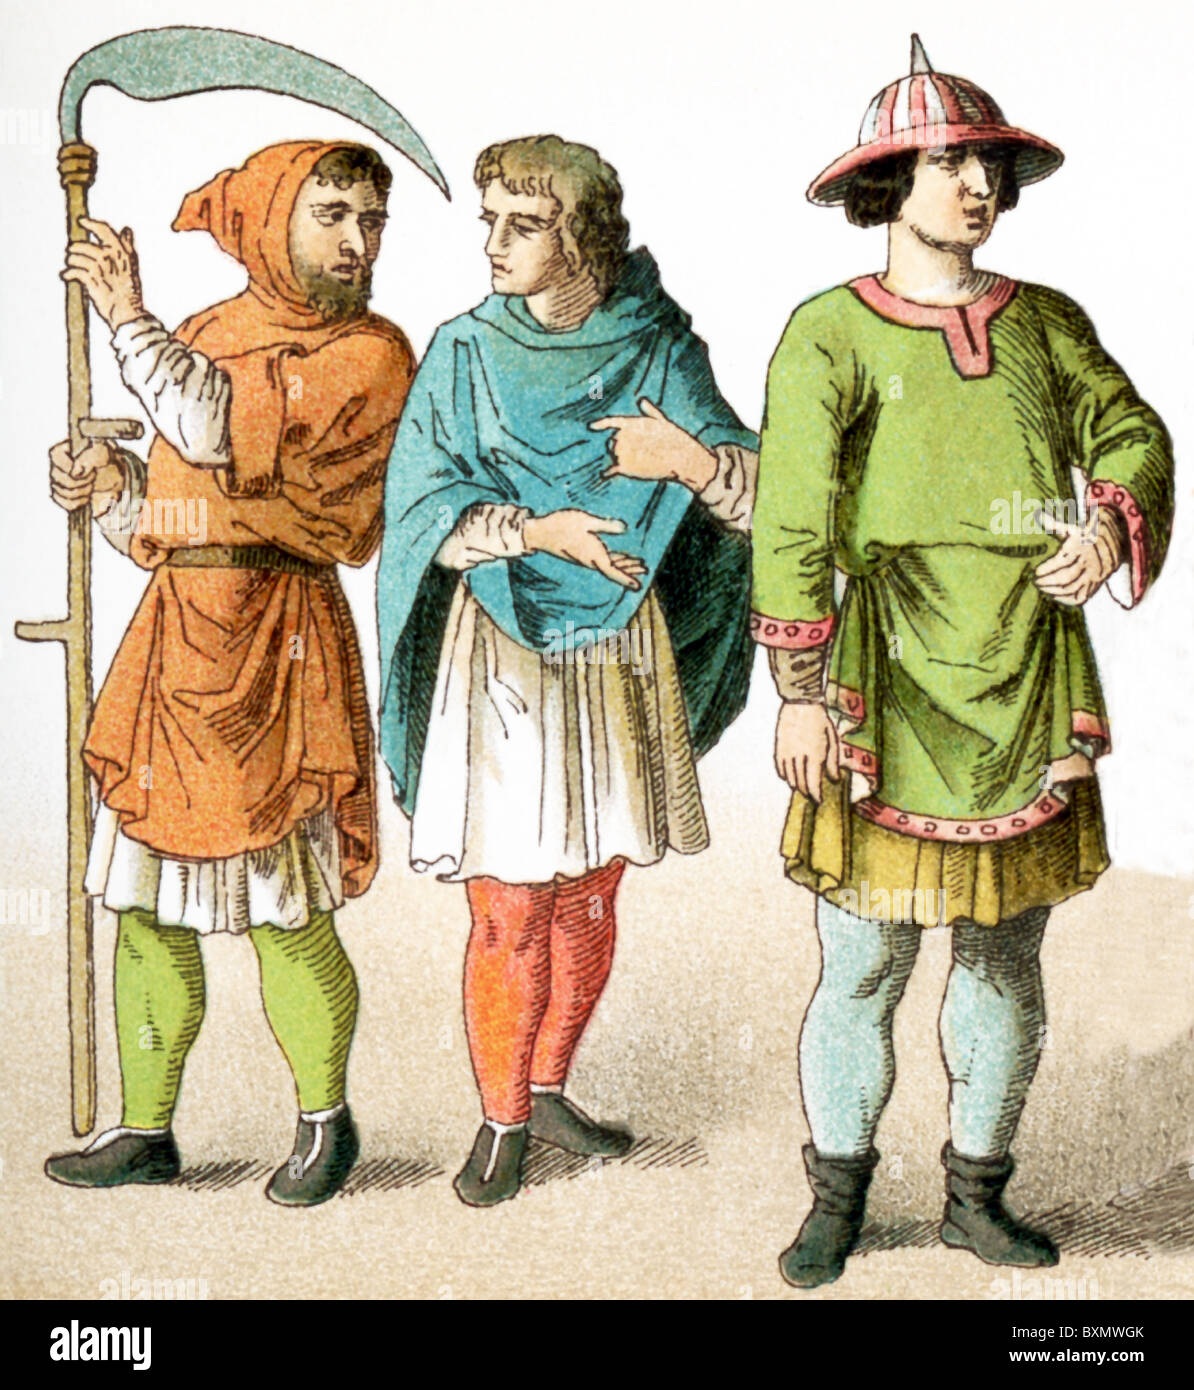 Le figure rappresentano il popolo francese circa A.D. 1100. Essi sono, da sinistra a destra: due contadini e un uomo di rango. Foto Stock